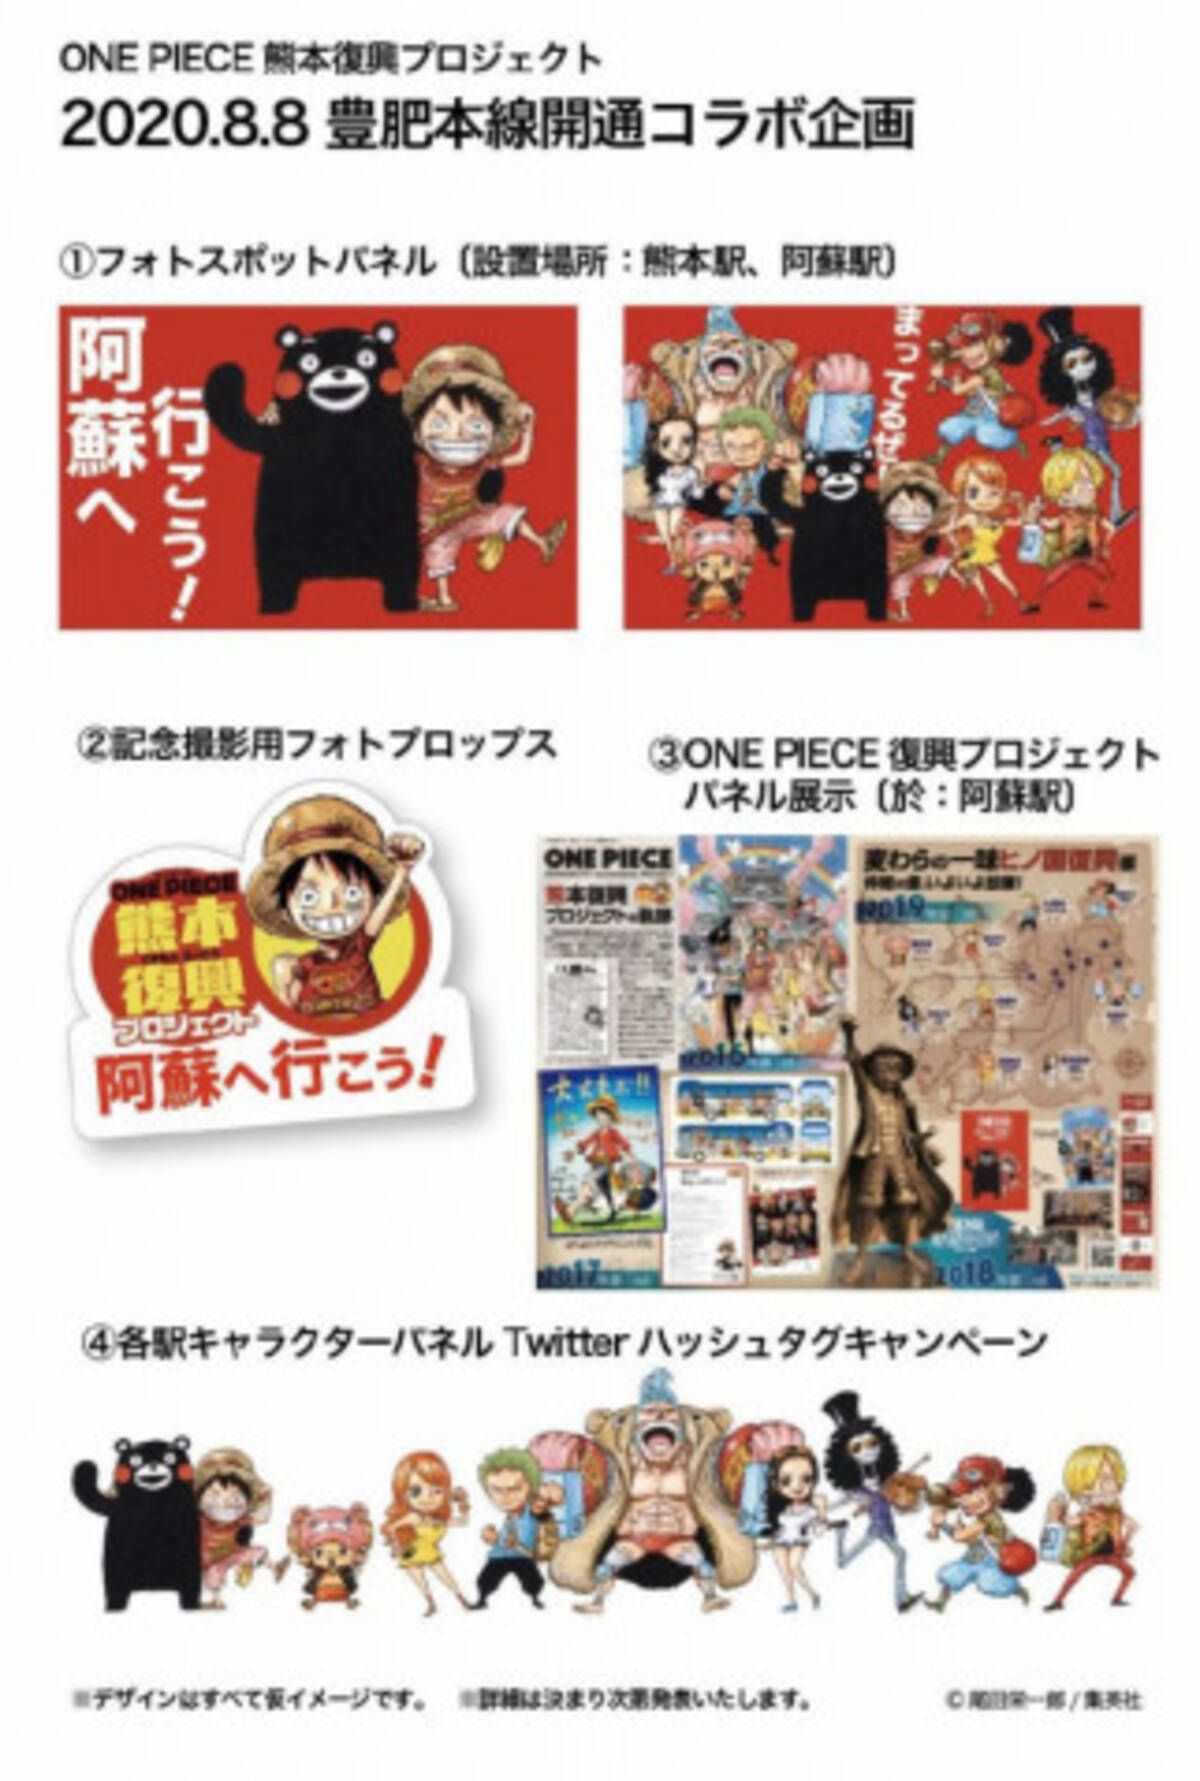 復活のjr豊肥本線で 麦わらの一味 がお迎え One Piece 熊本復興プロジェクト実施 年8月3日 エキサイトニュース